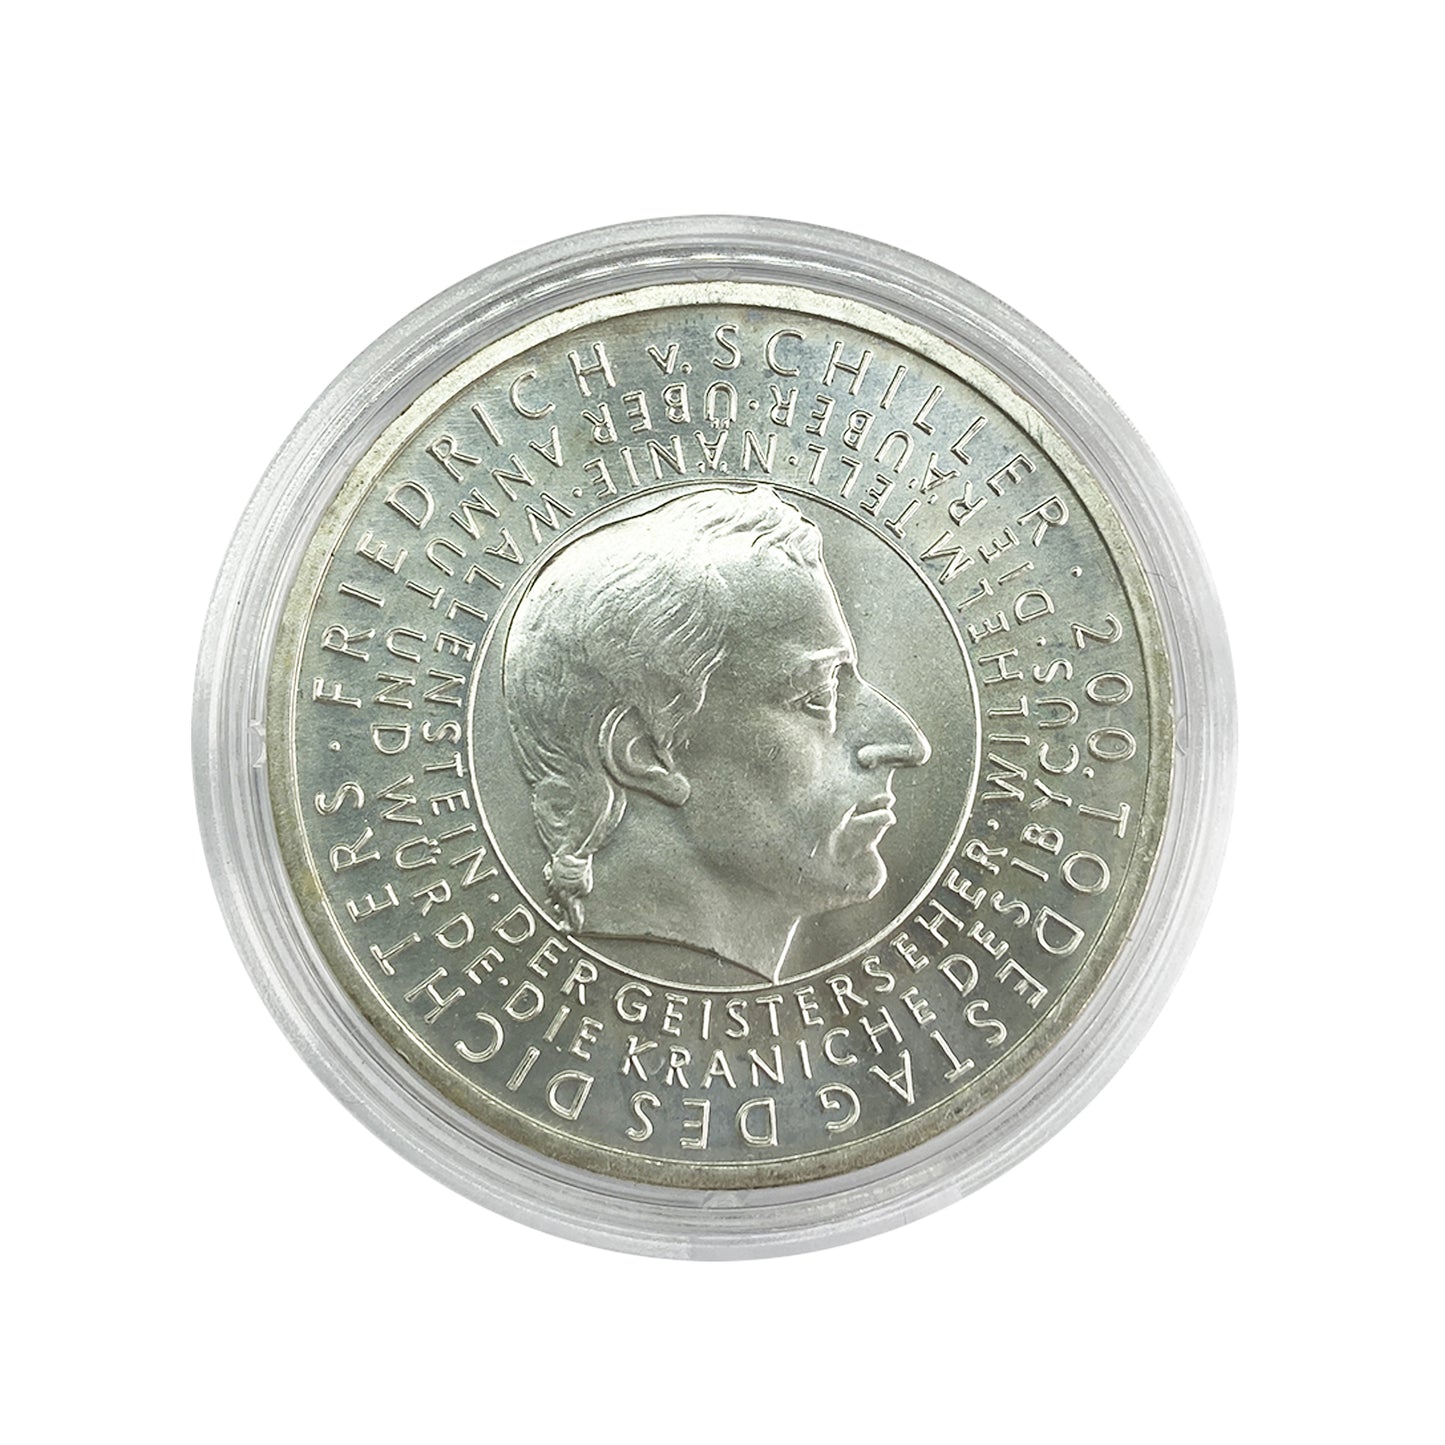 Alemania - Moneda 10 euros plata 2005 - Friedrich von Schiller